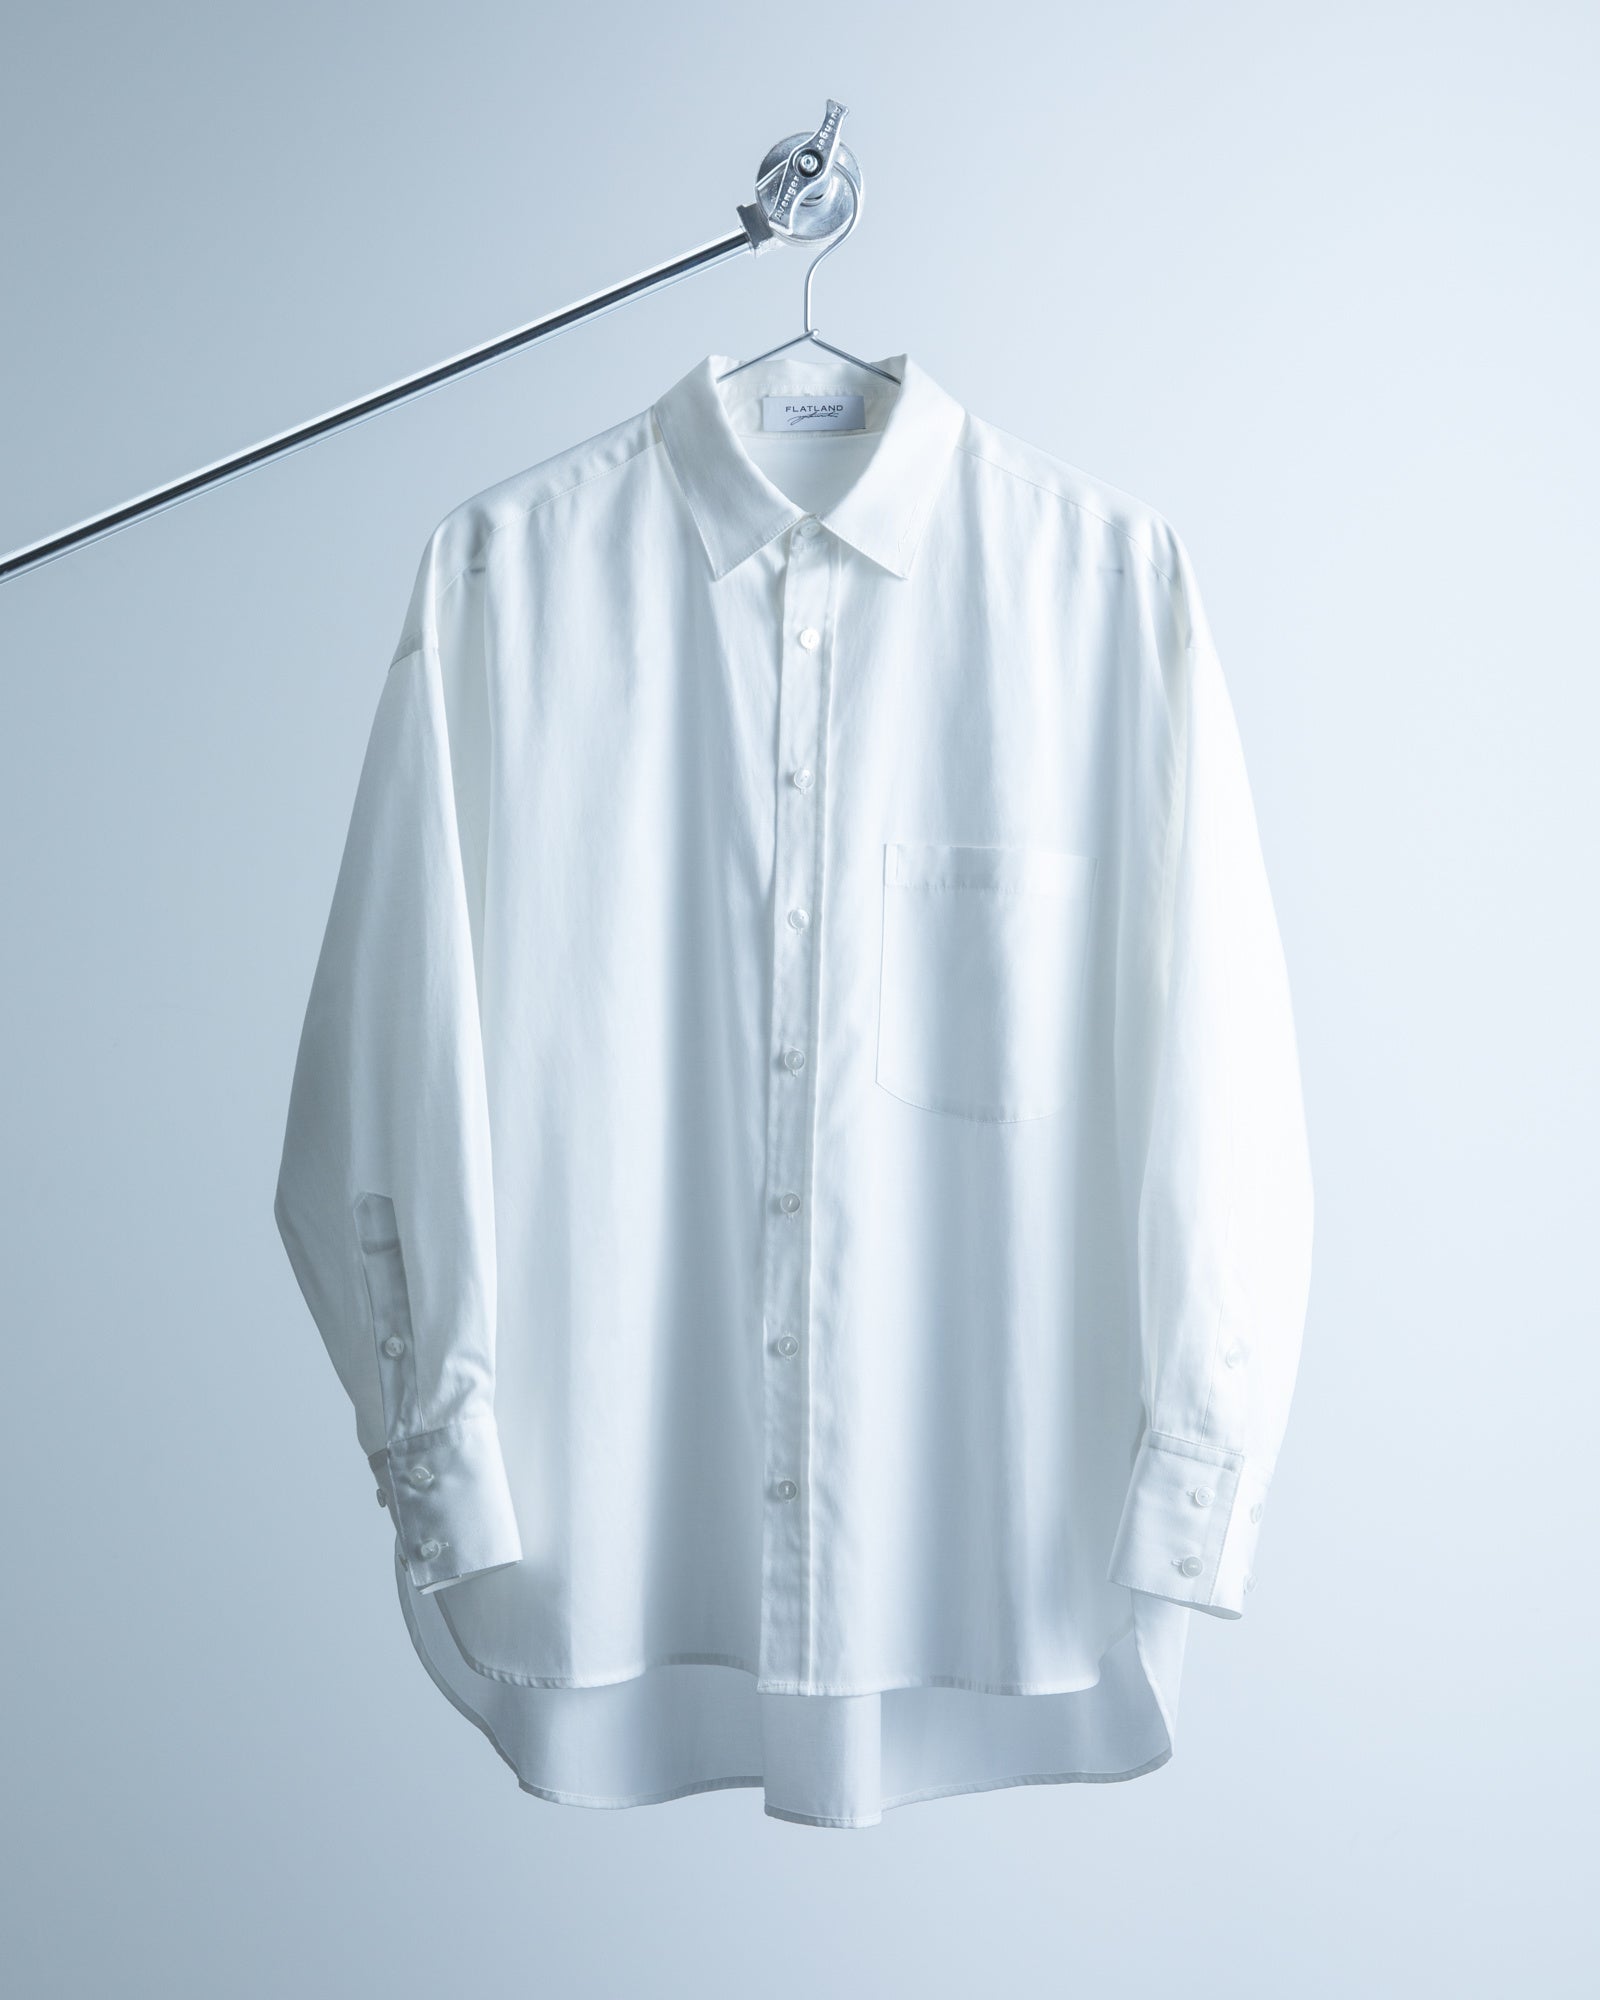 森田美勇人がディレクターを務めるプロジェクト「FLATLAND」から3rd collection 「Freestyle design shirt」が発売される。